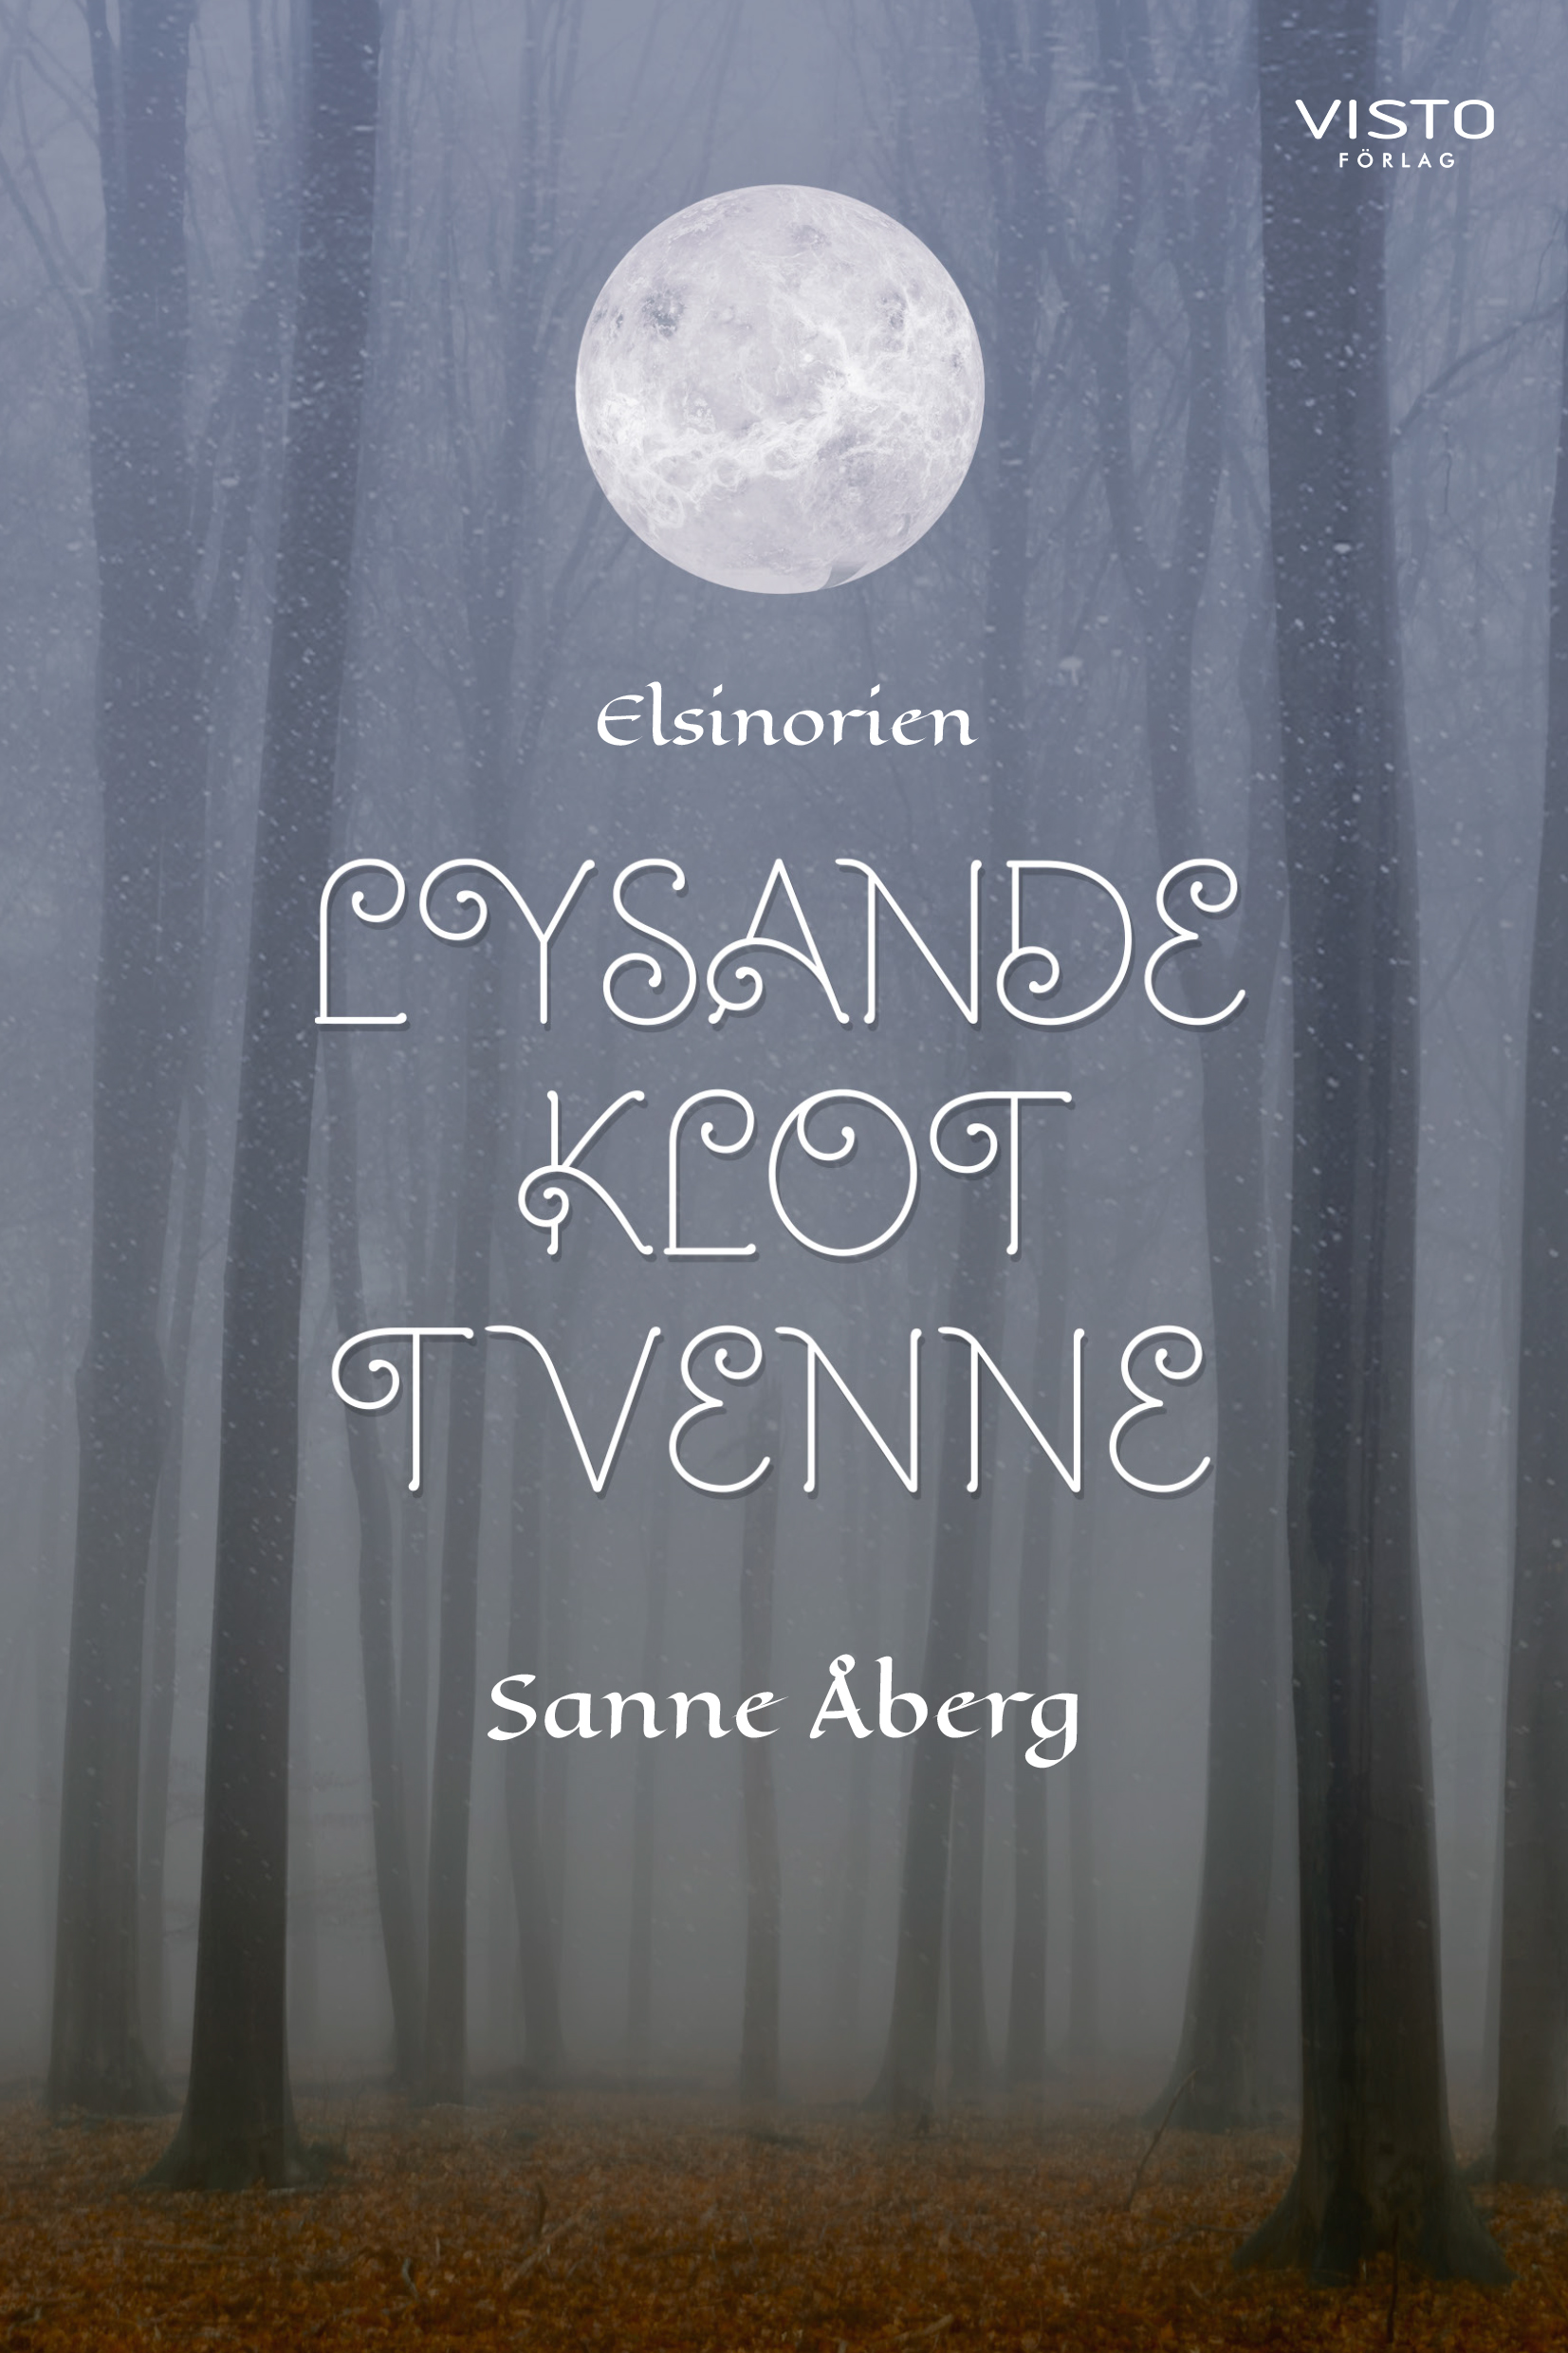 Framsida av boken Lysande klot tvenne. Kala bokstammar i en dimmig skog. Titeltext och författartext.